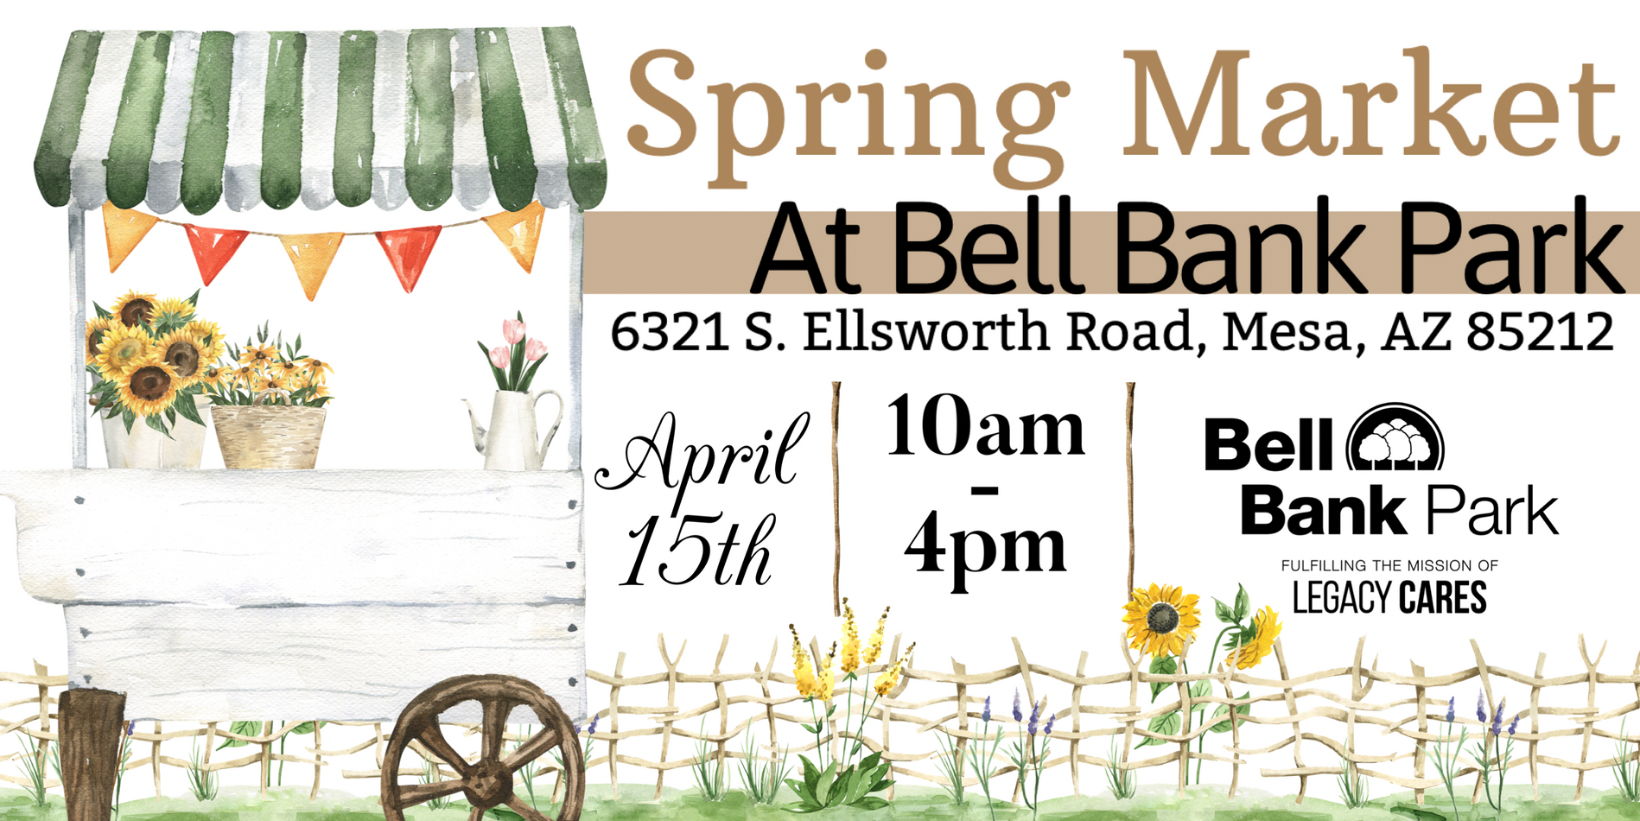 Spring Market At Bell Bank Park promotional image